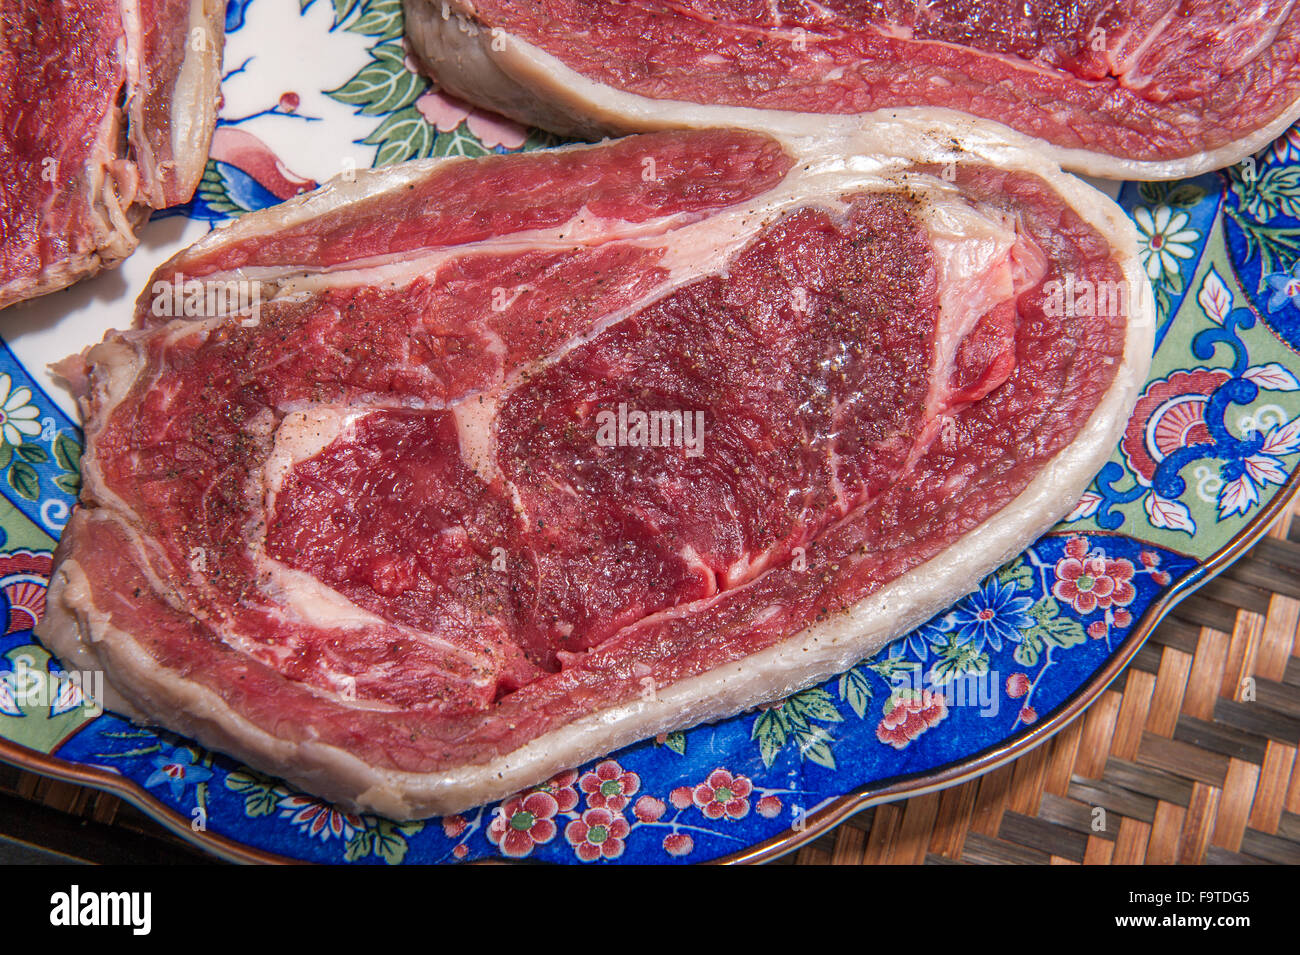 Grand Cru rouge steak de viande sur une plaque Banque D'Images